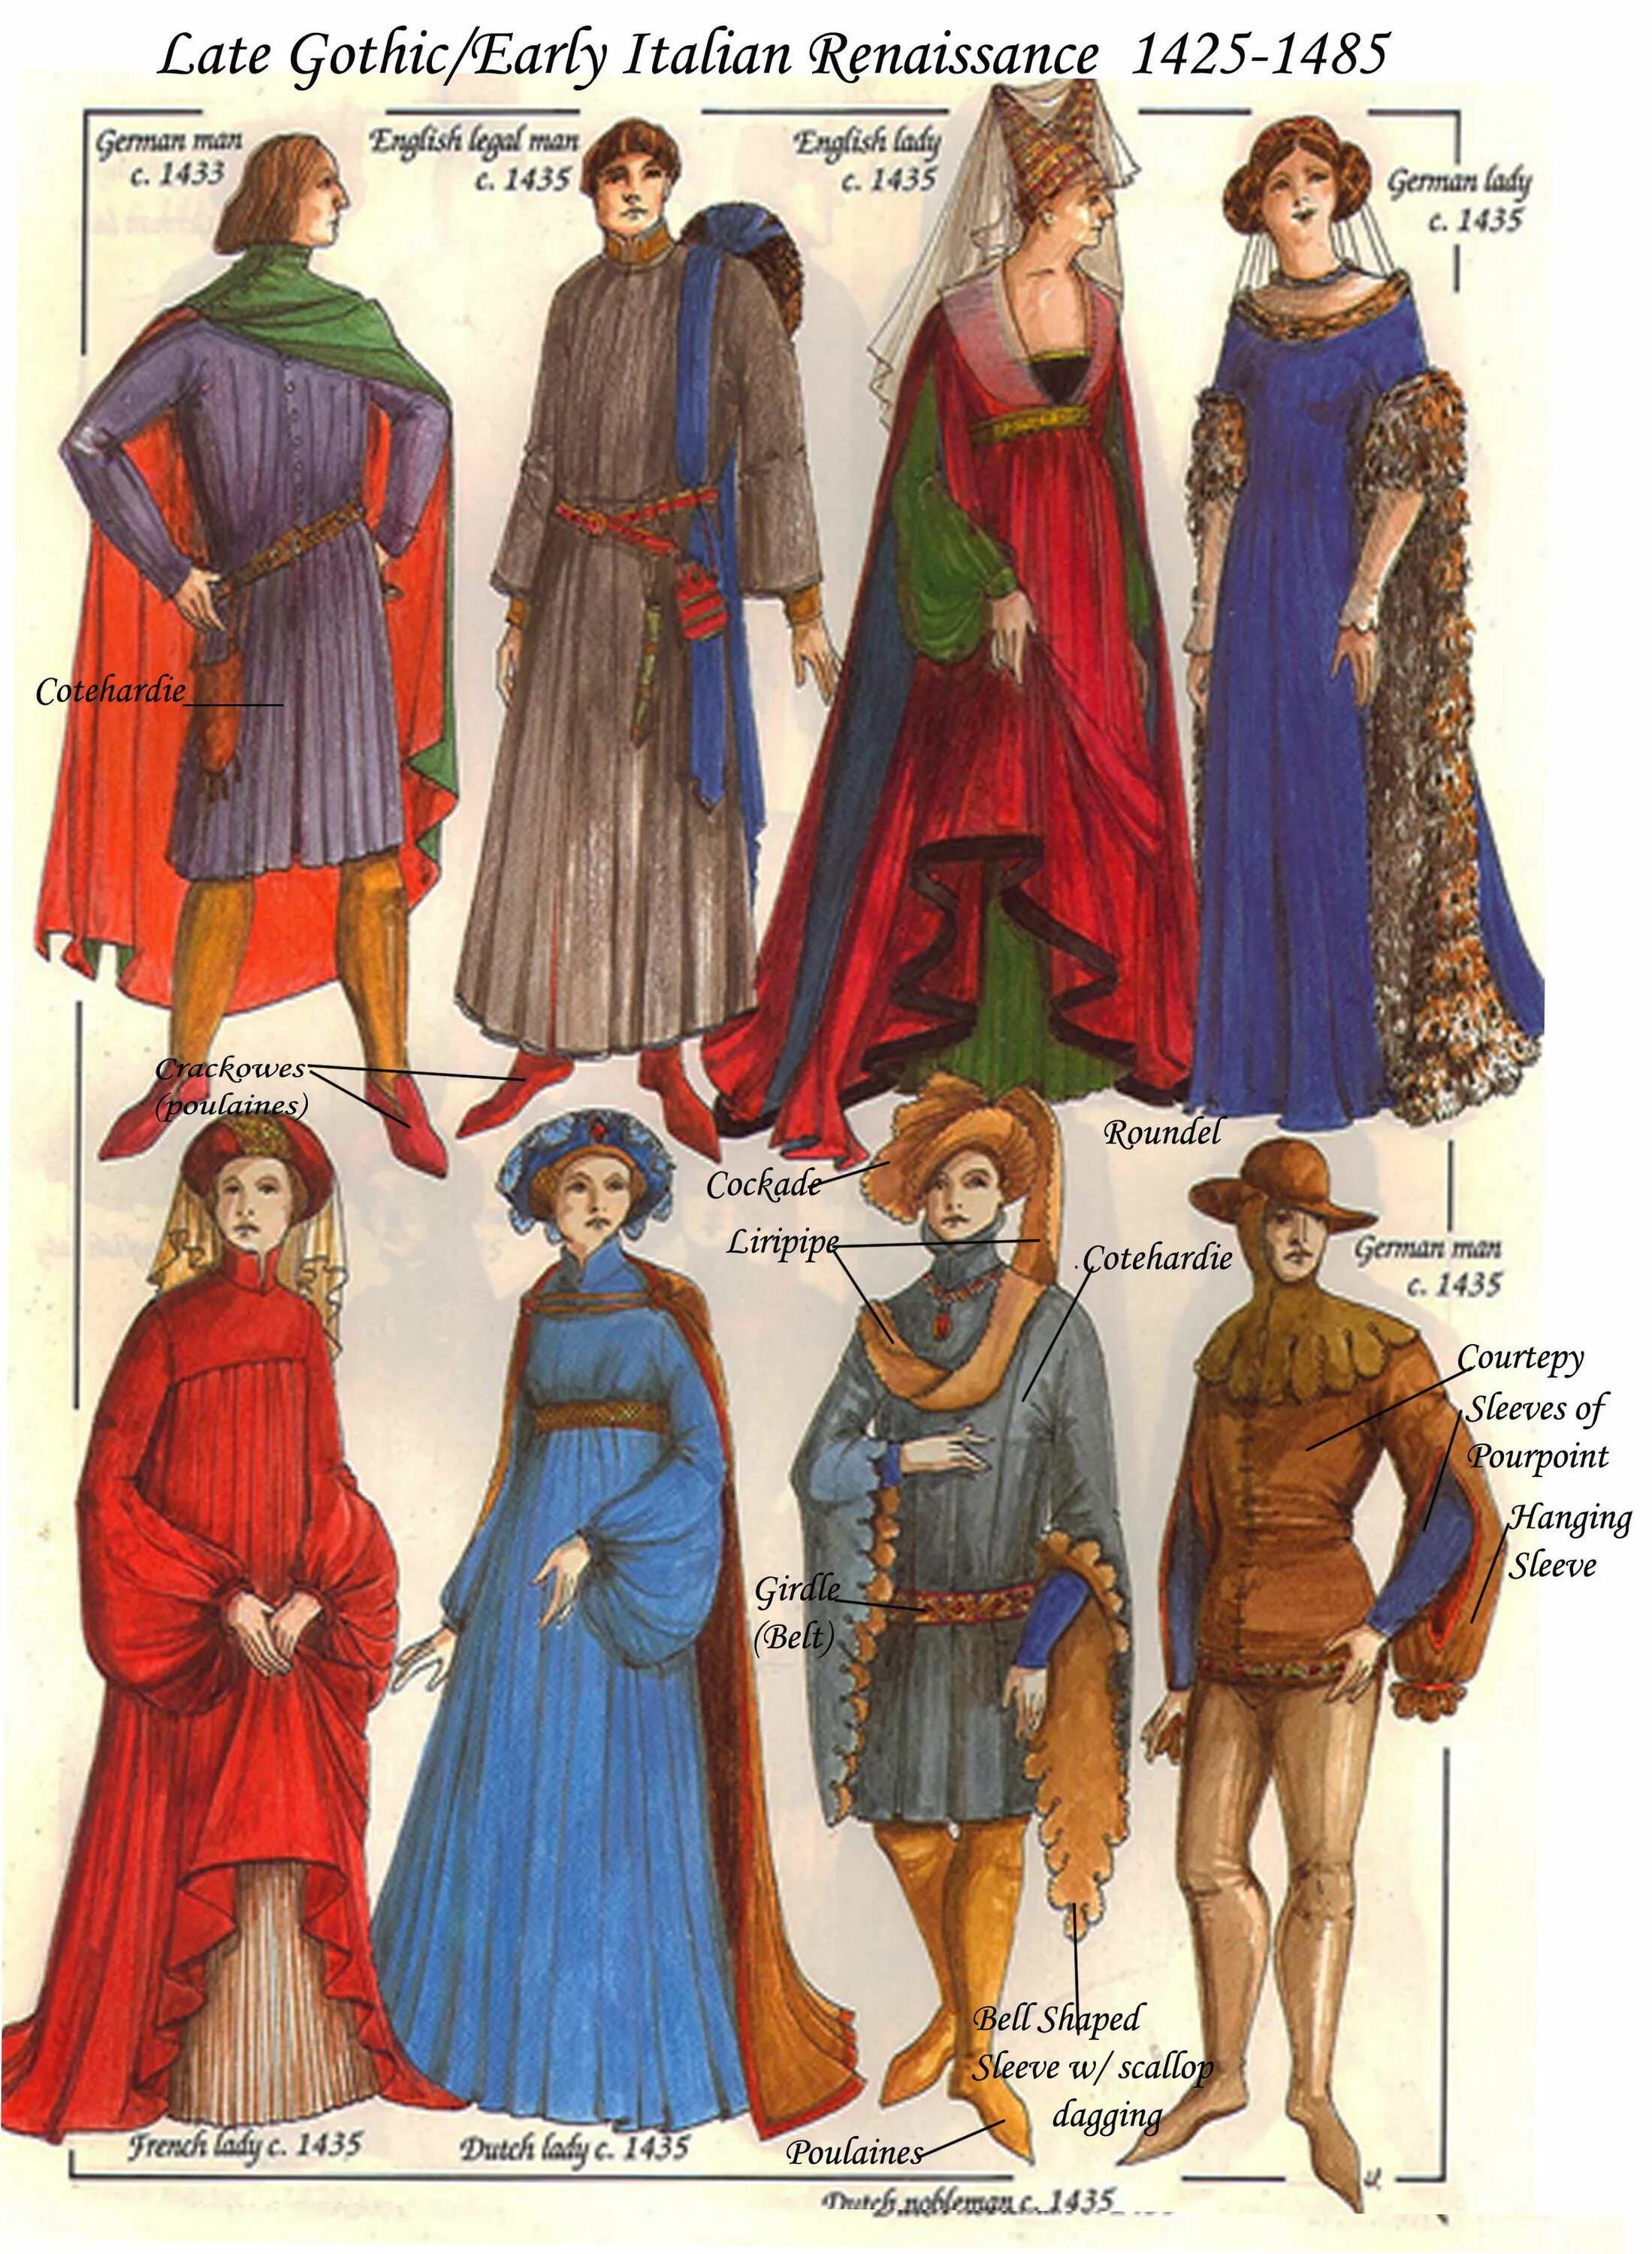 Костюм эпохи средневековья романский стиль. Костюм раннего средневековья романский. Романский стиль в костюме раннего средневековья. Костюм раннего средневековья романский стиль в костюме. Одежда эпохи средневековья